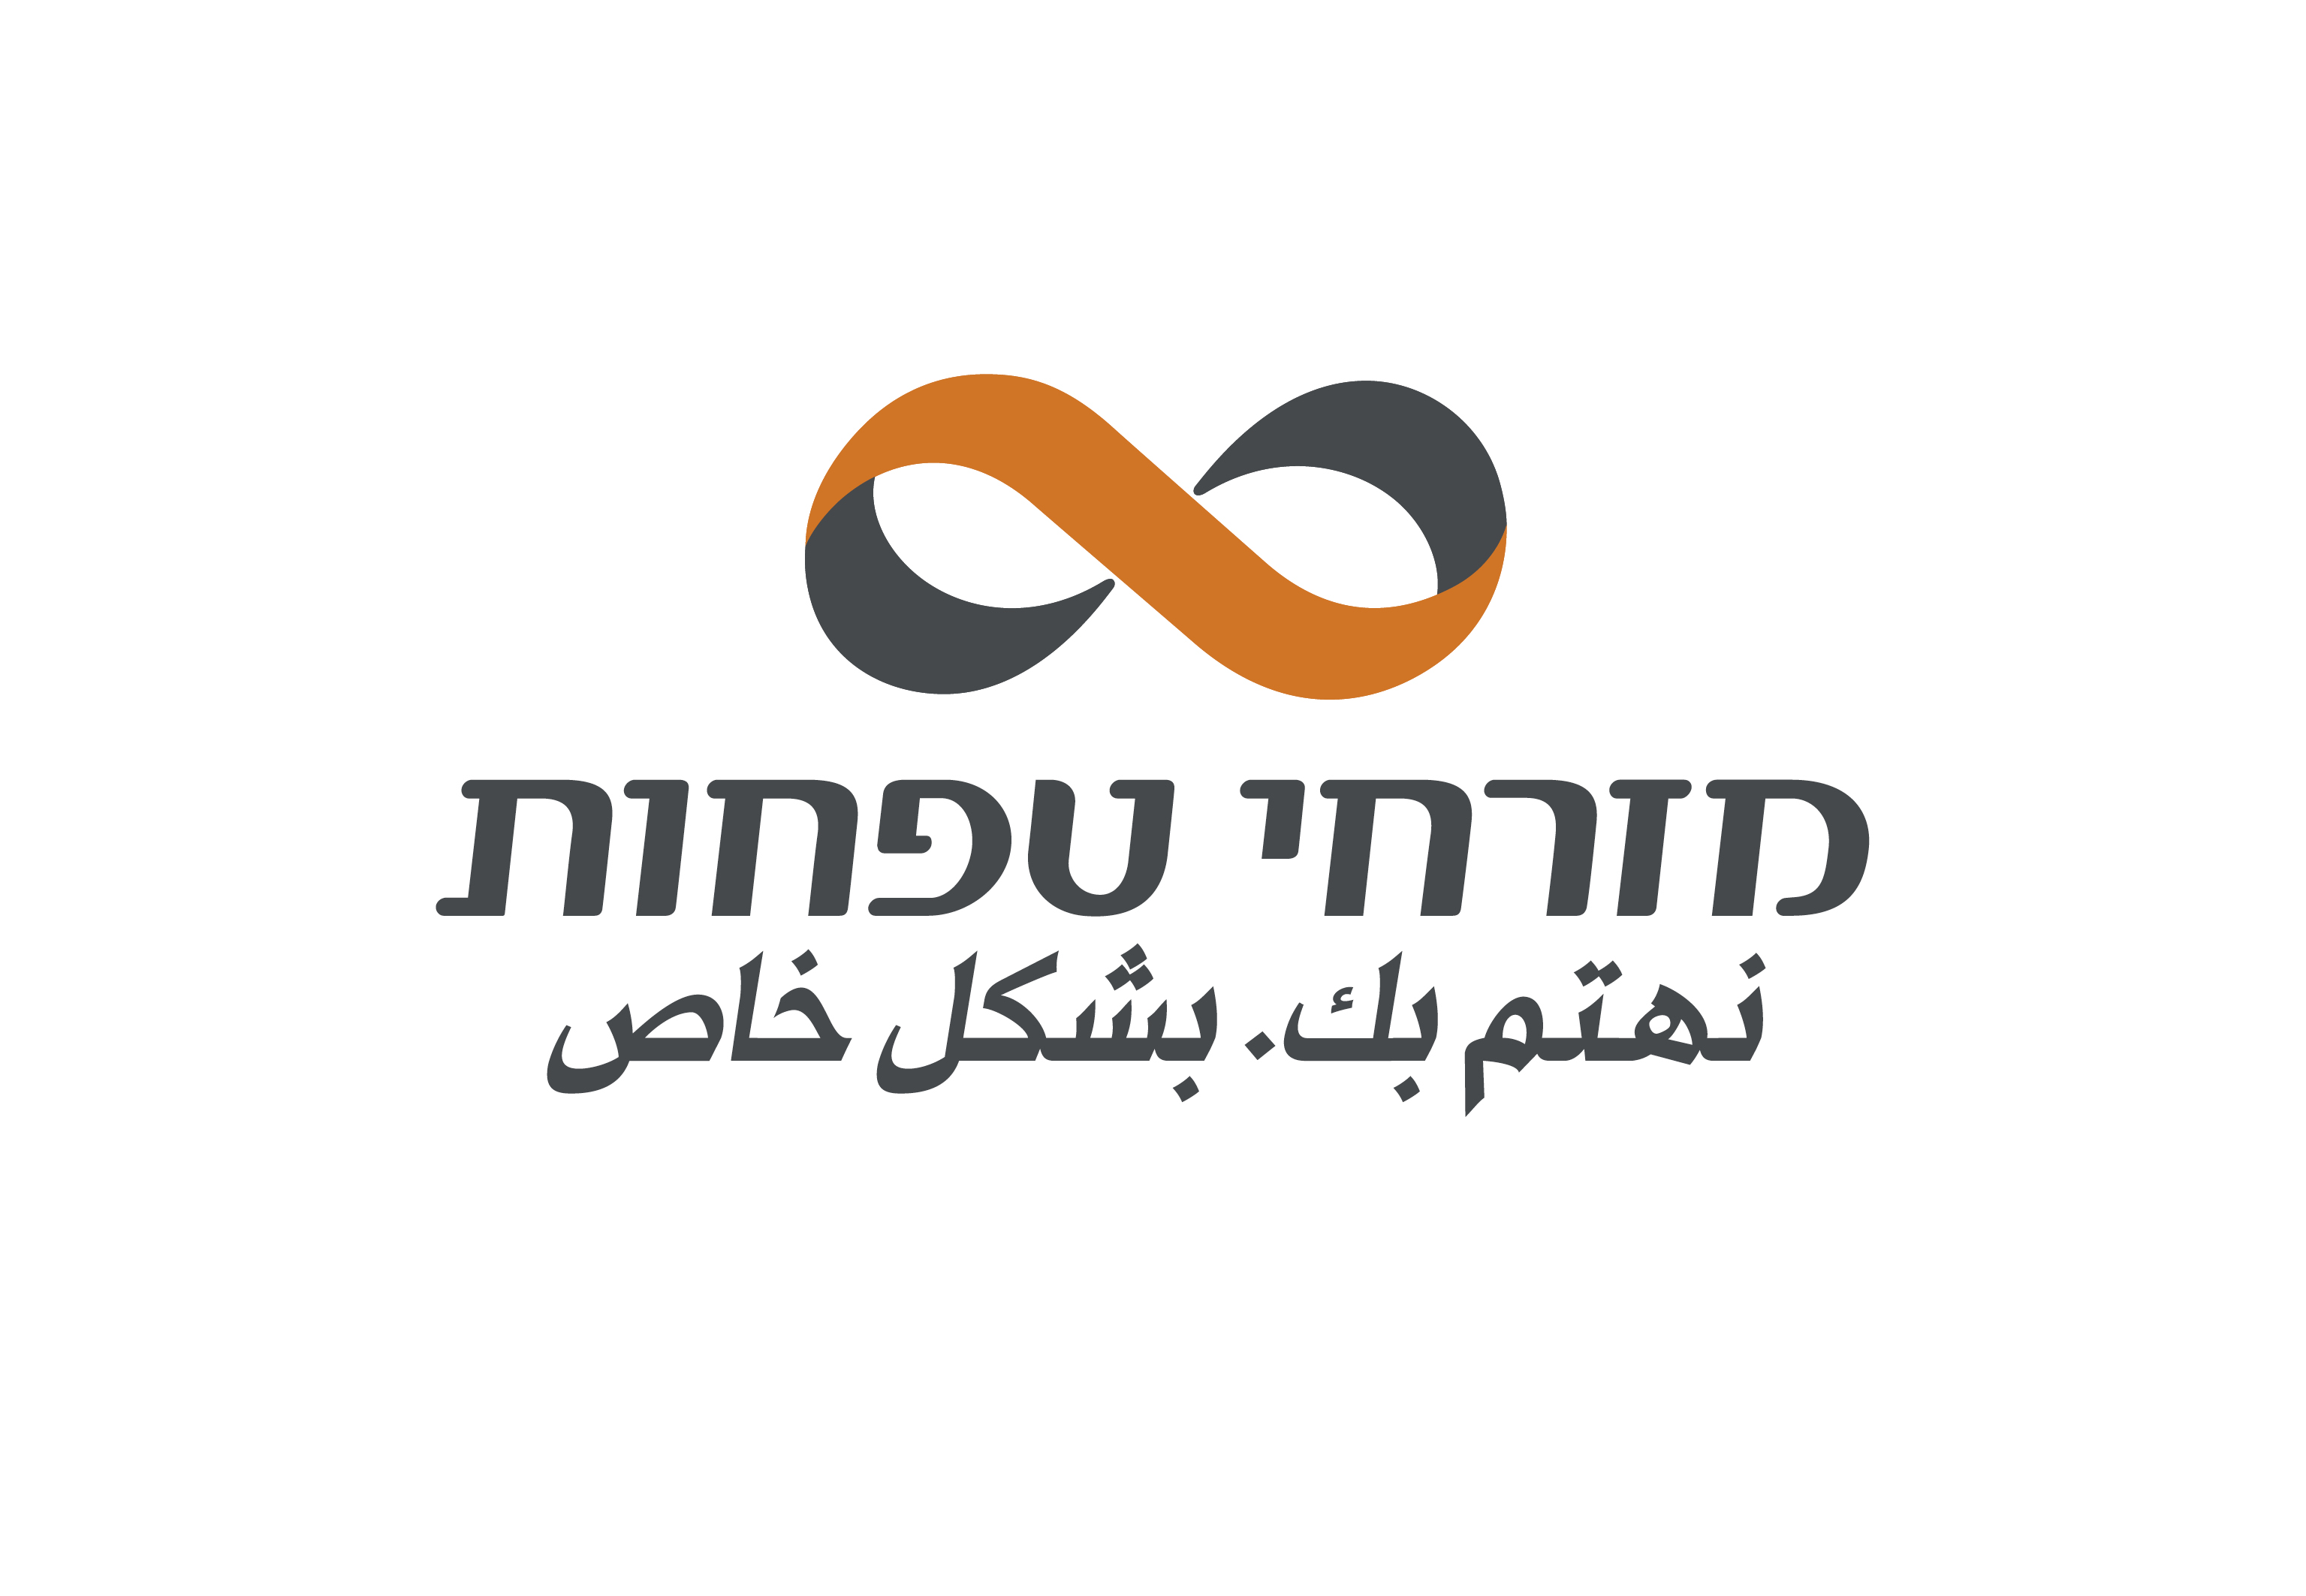 بنك مزراحي طفحوت يتبرّع بطرود غذائية للعائلات المستورة في كفر قاسم